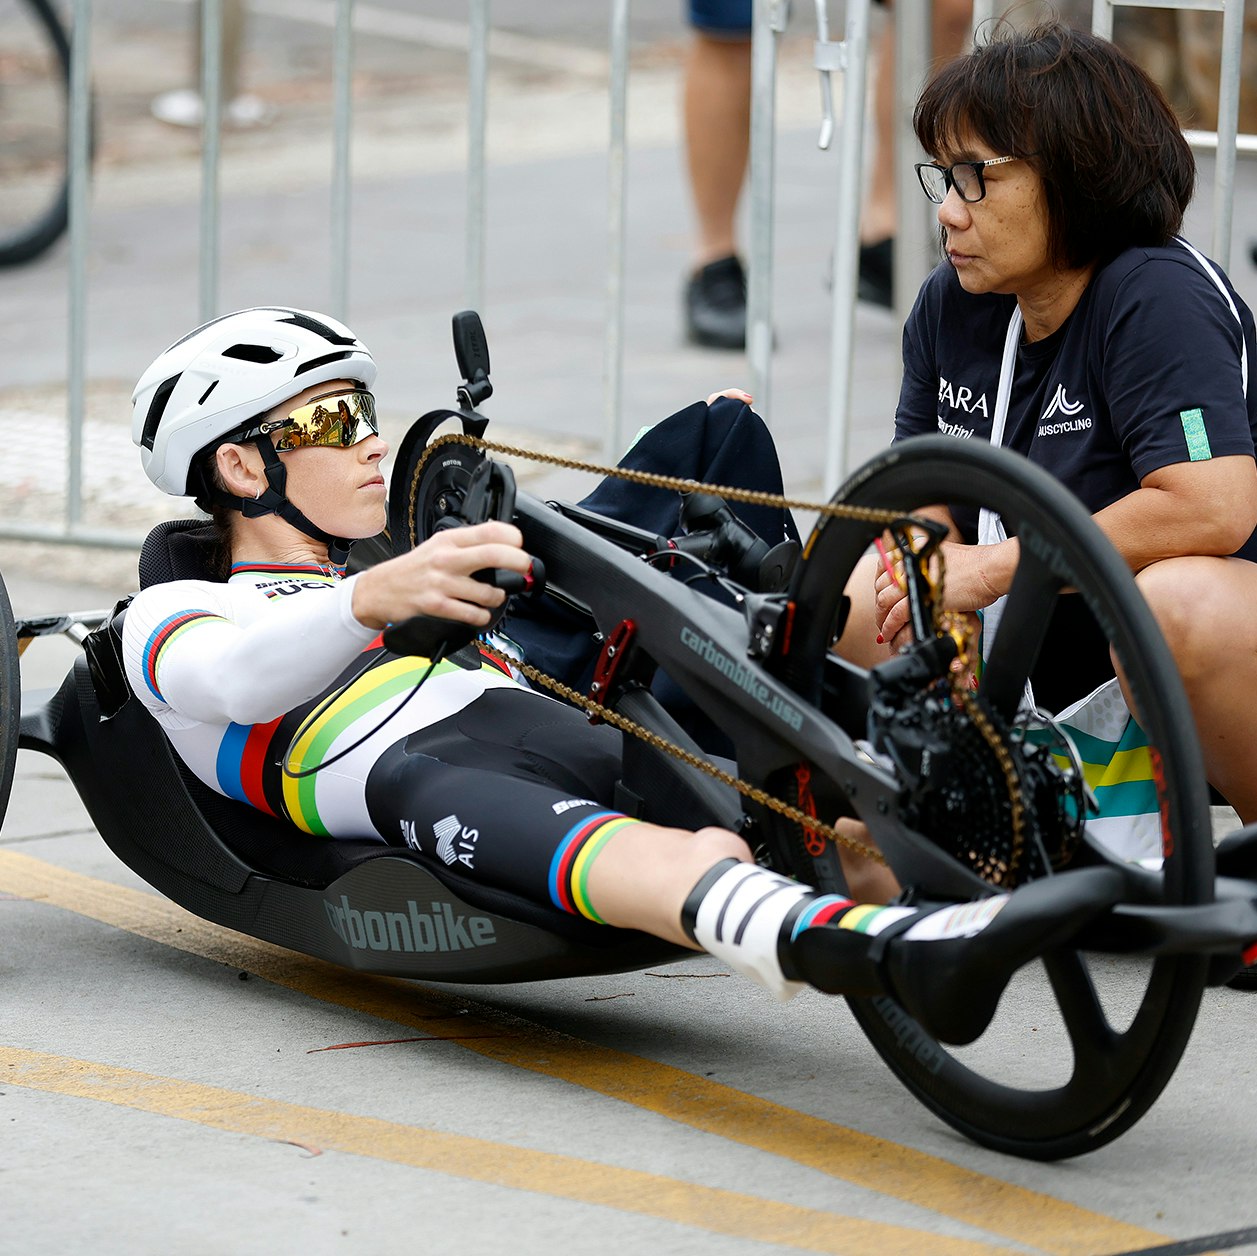 Paracyclist receiving coaching